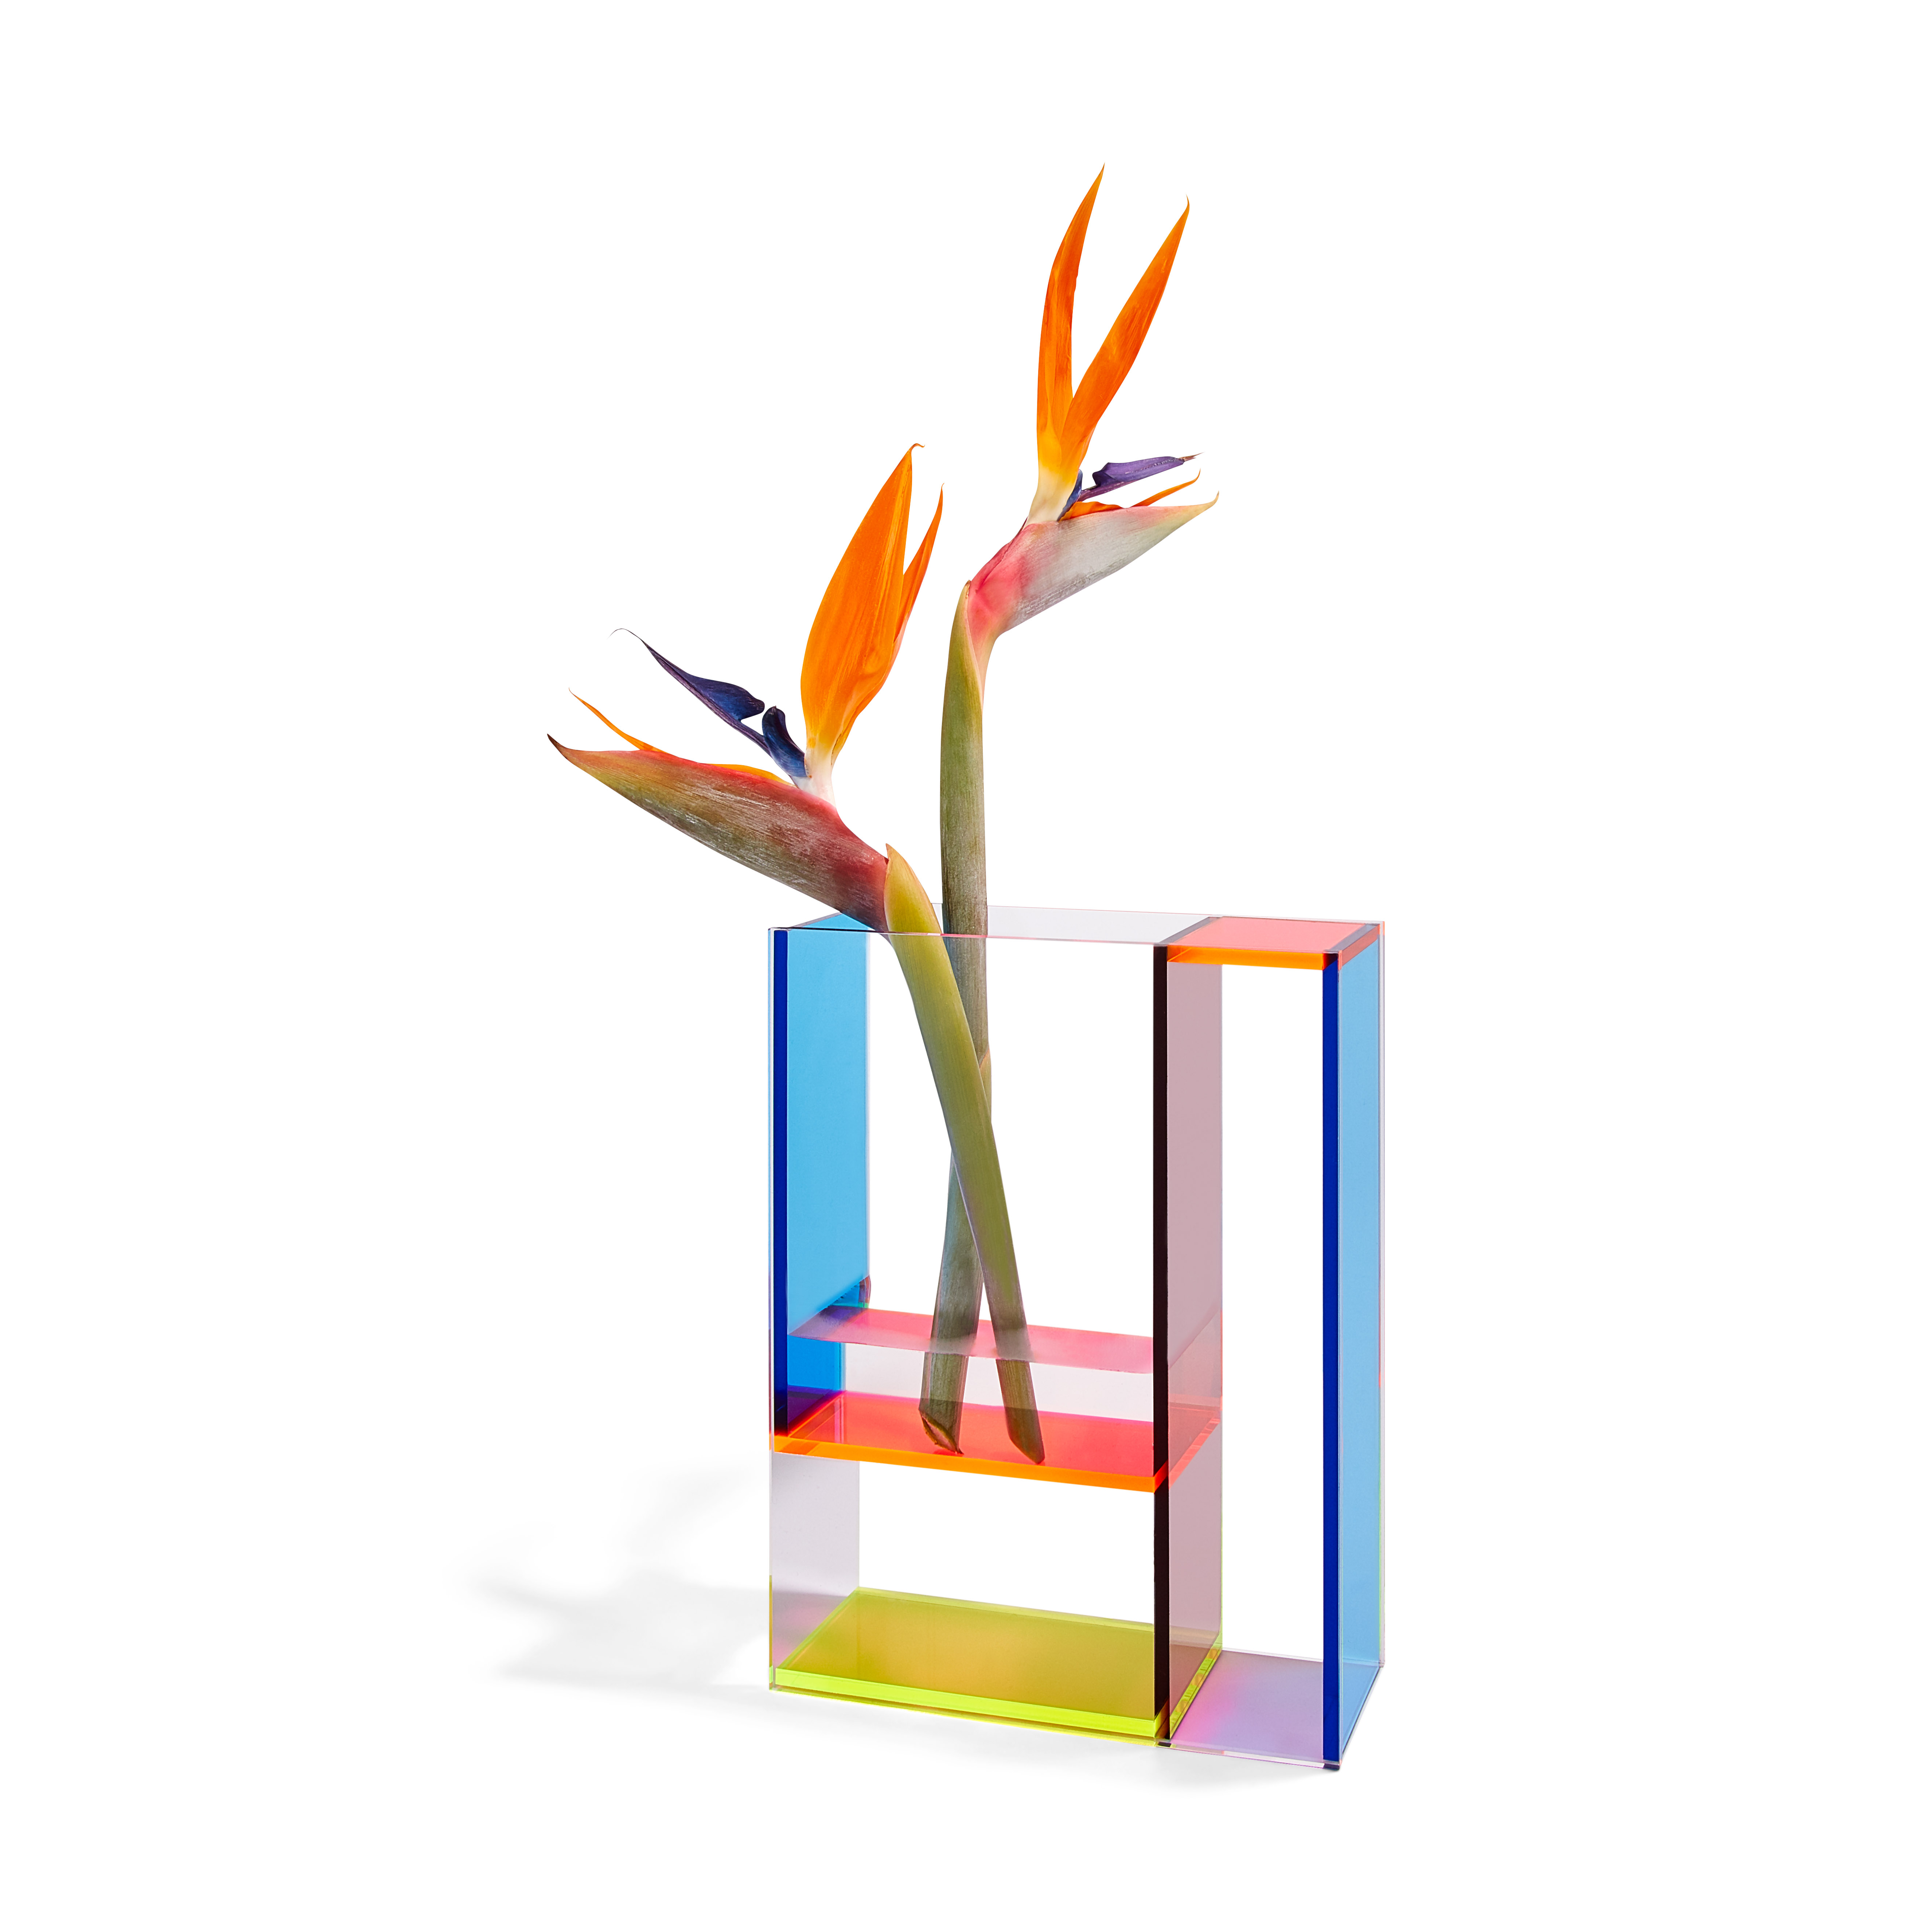 Vase; Mondri Vase Neon; Acrylglas; blau, gelb, orange, transparent; 24 x 19 x 8.5; MoMA